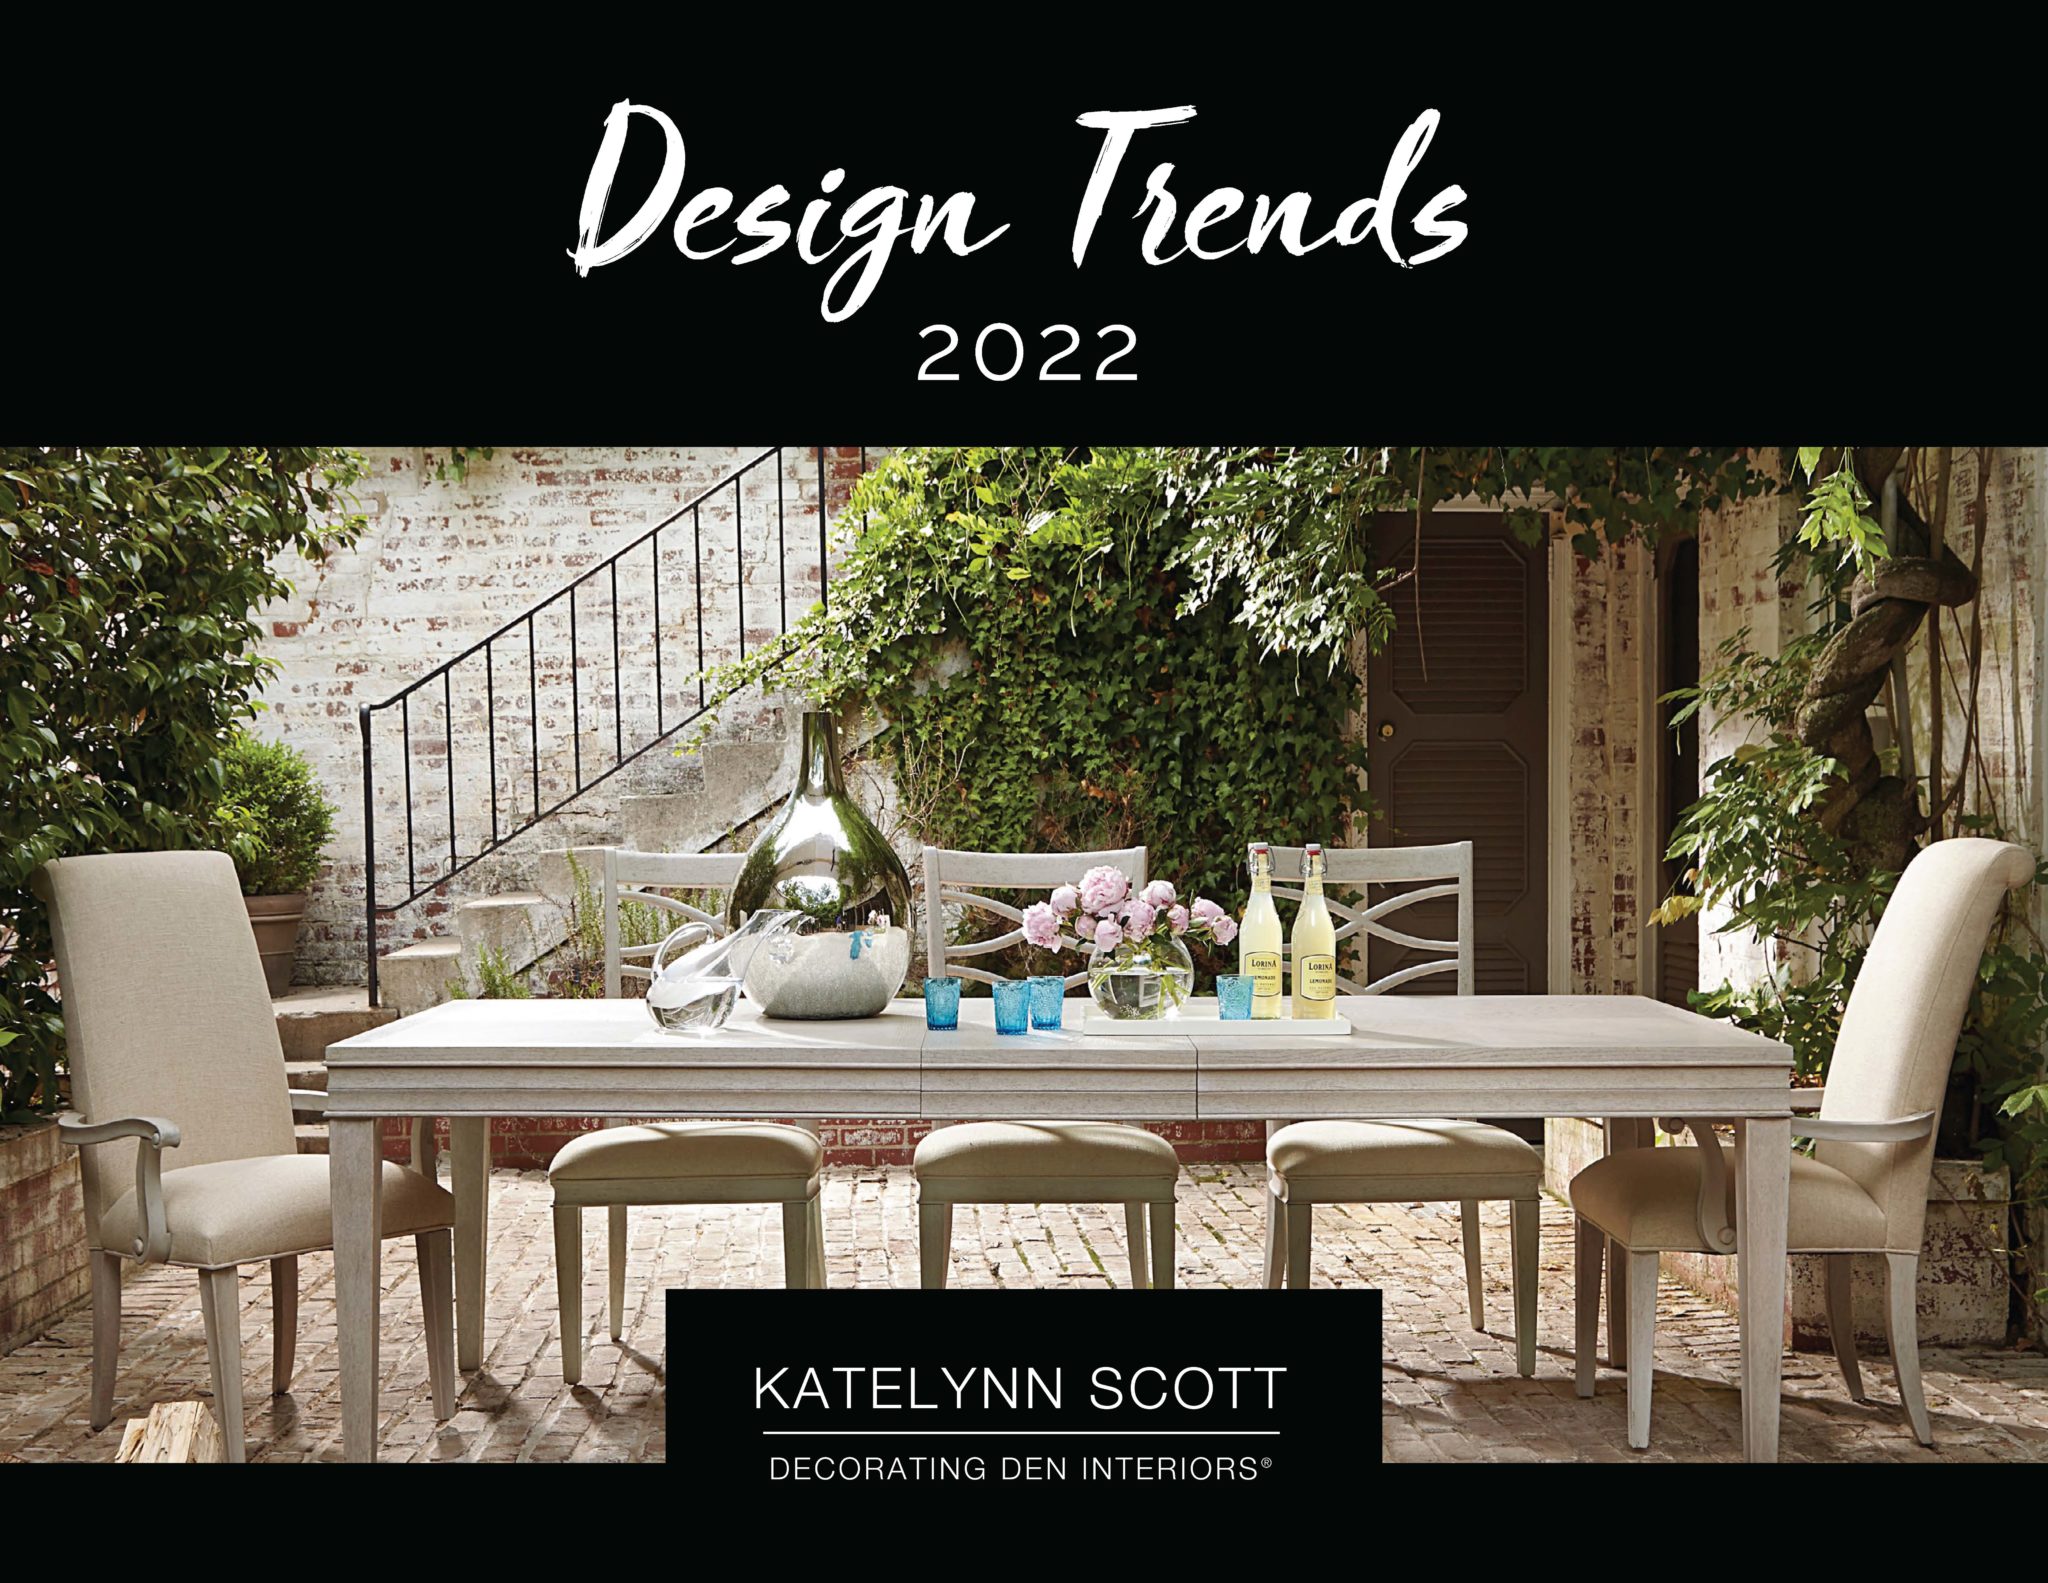 Design Trends 2022 from Katelynn Scott - Decorating Den Interiors